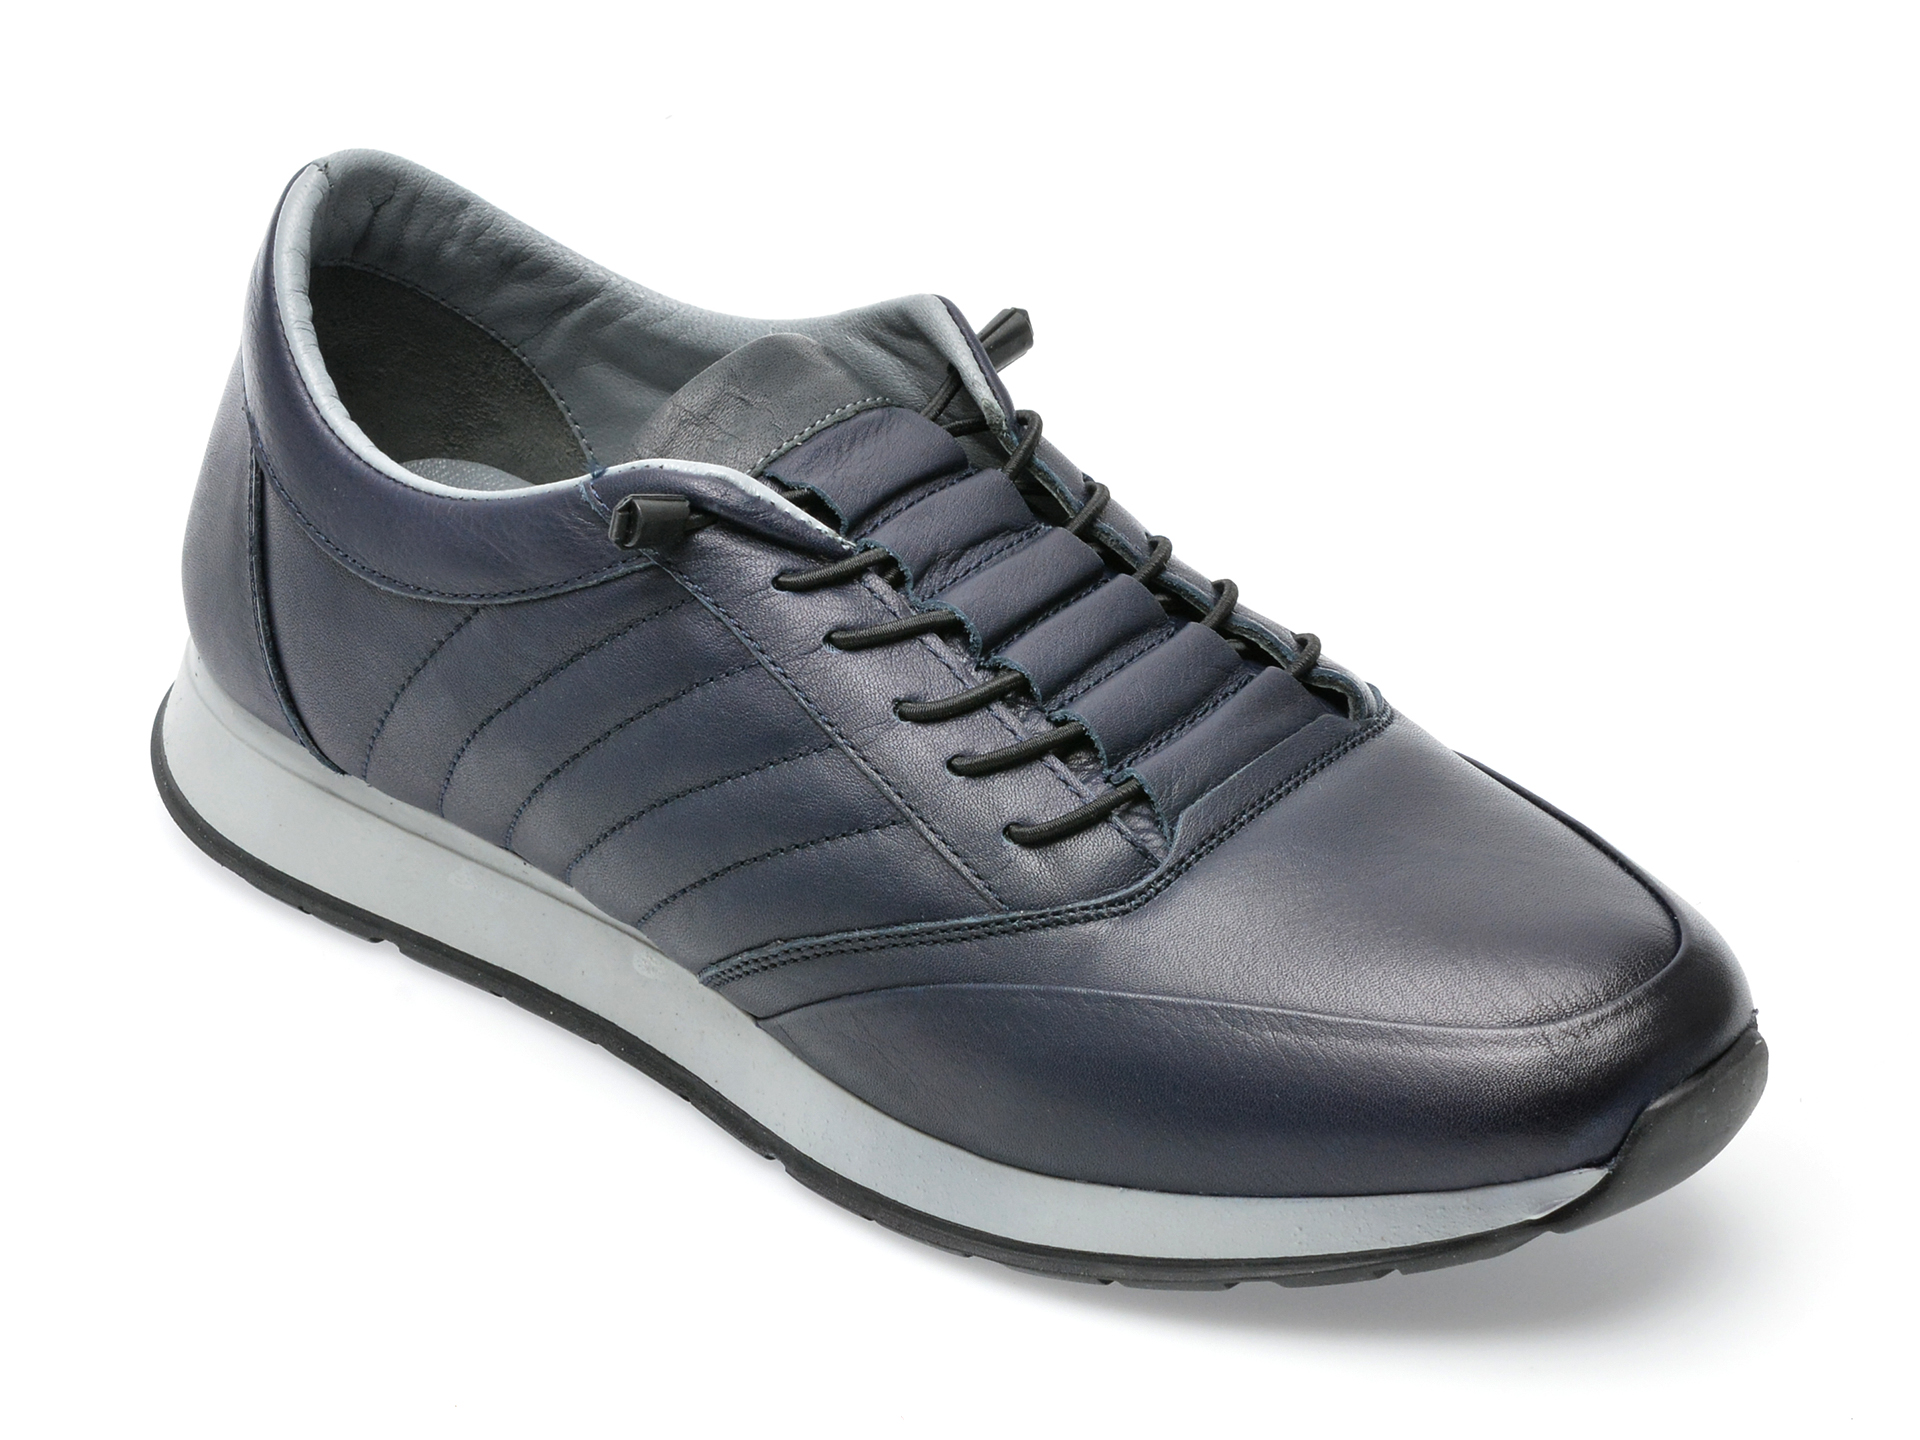 Pantofi AXXELLL bleumarin, SY304, din piele naturala /barbati/pantofi